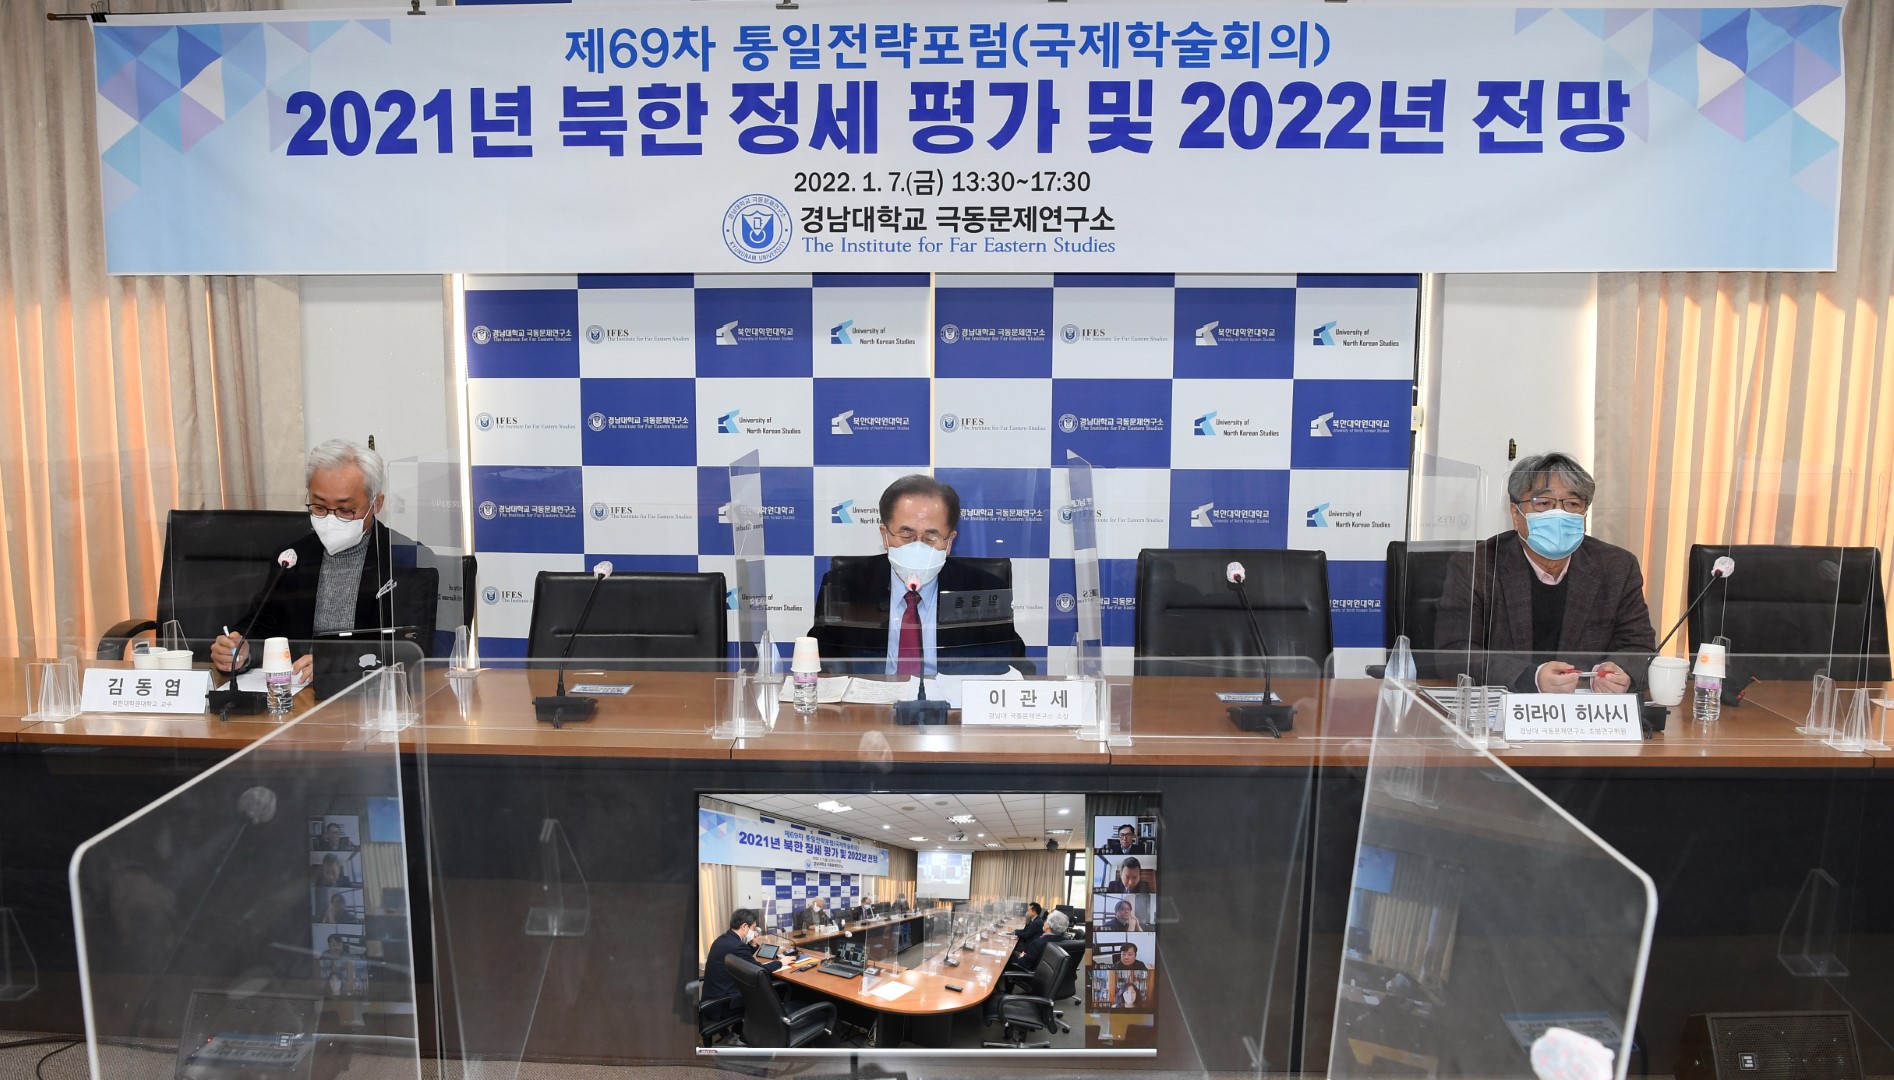 경남대 극동문제연구소, “2021년 북한 정세 평가 및 2022년   전망”을 주제로 『제69차 통일전략포럼(국제학술회의)』개최   첨부 이미지